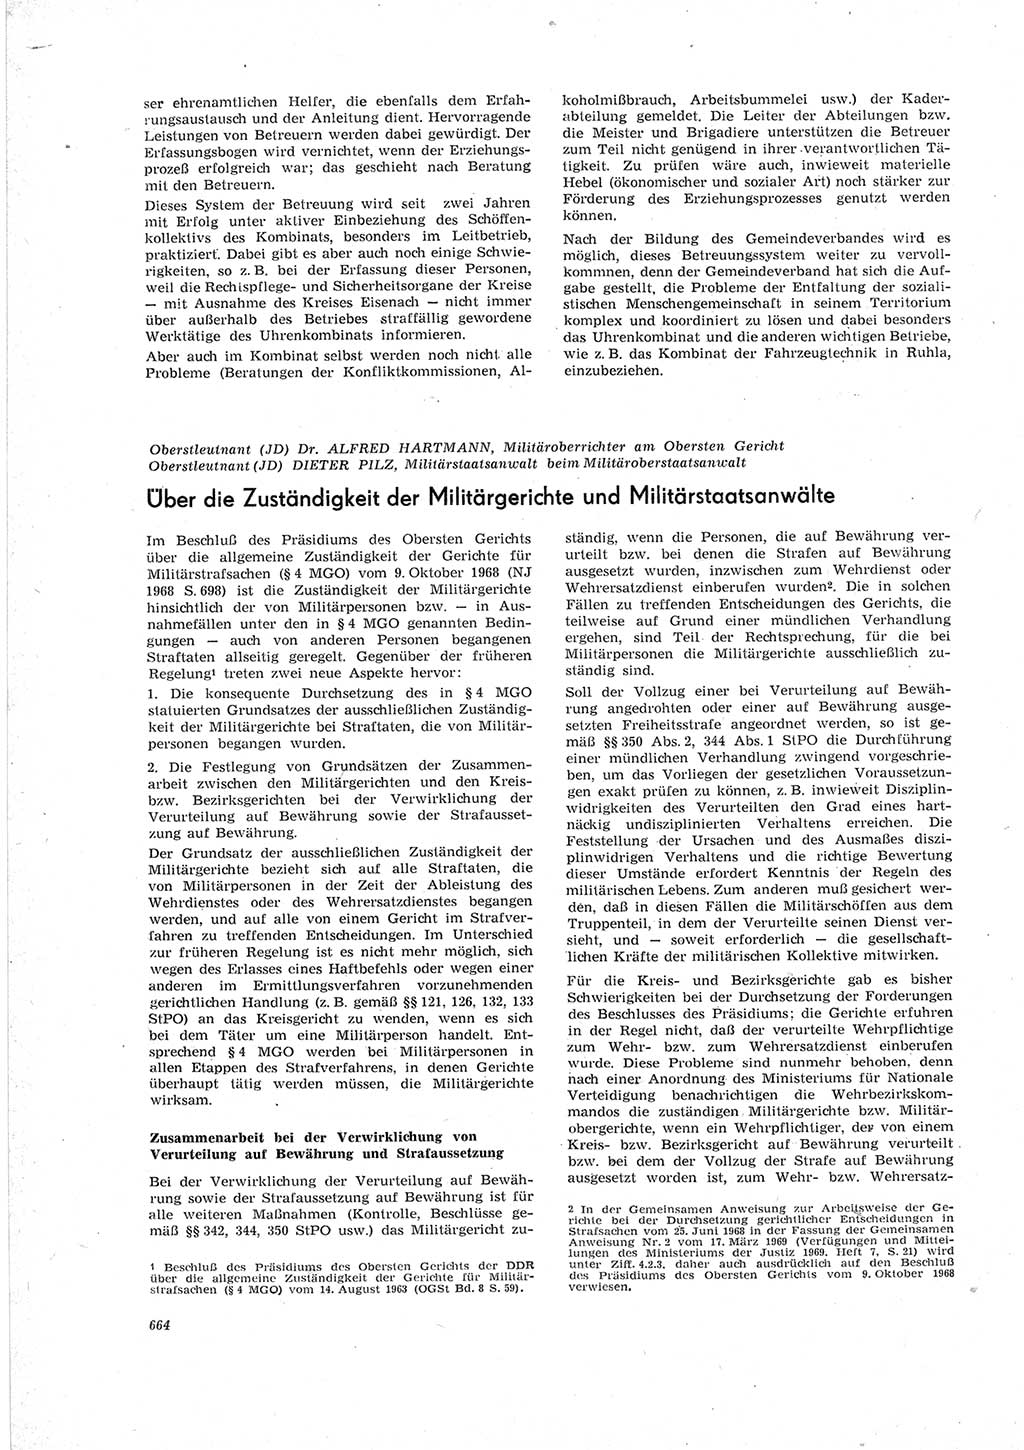 Neue Justiz (NJ), Zeitschrift für Recht und Rechtswissenschaft [Deutsche Demokratische Republik (DDR)], 23. Jahrgang 1969, Seite 664 (NJ DDR 1969, S. 664)